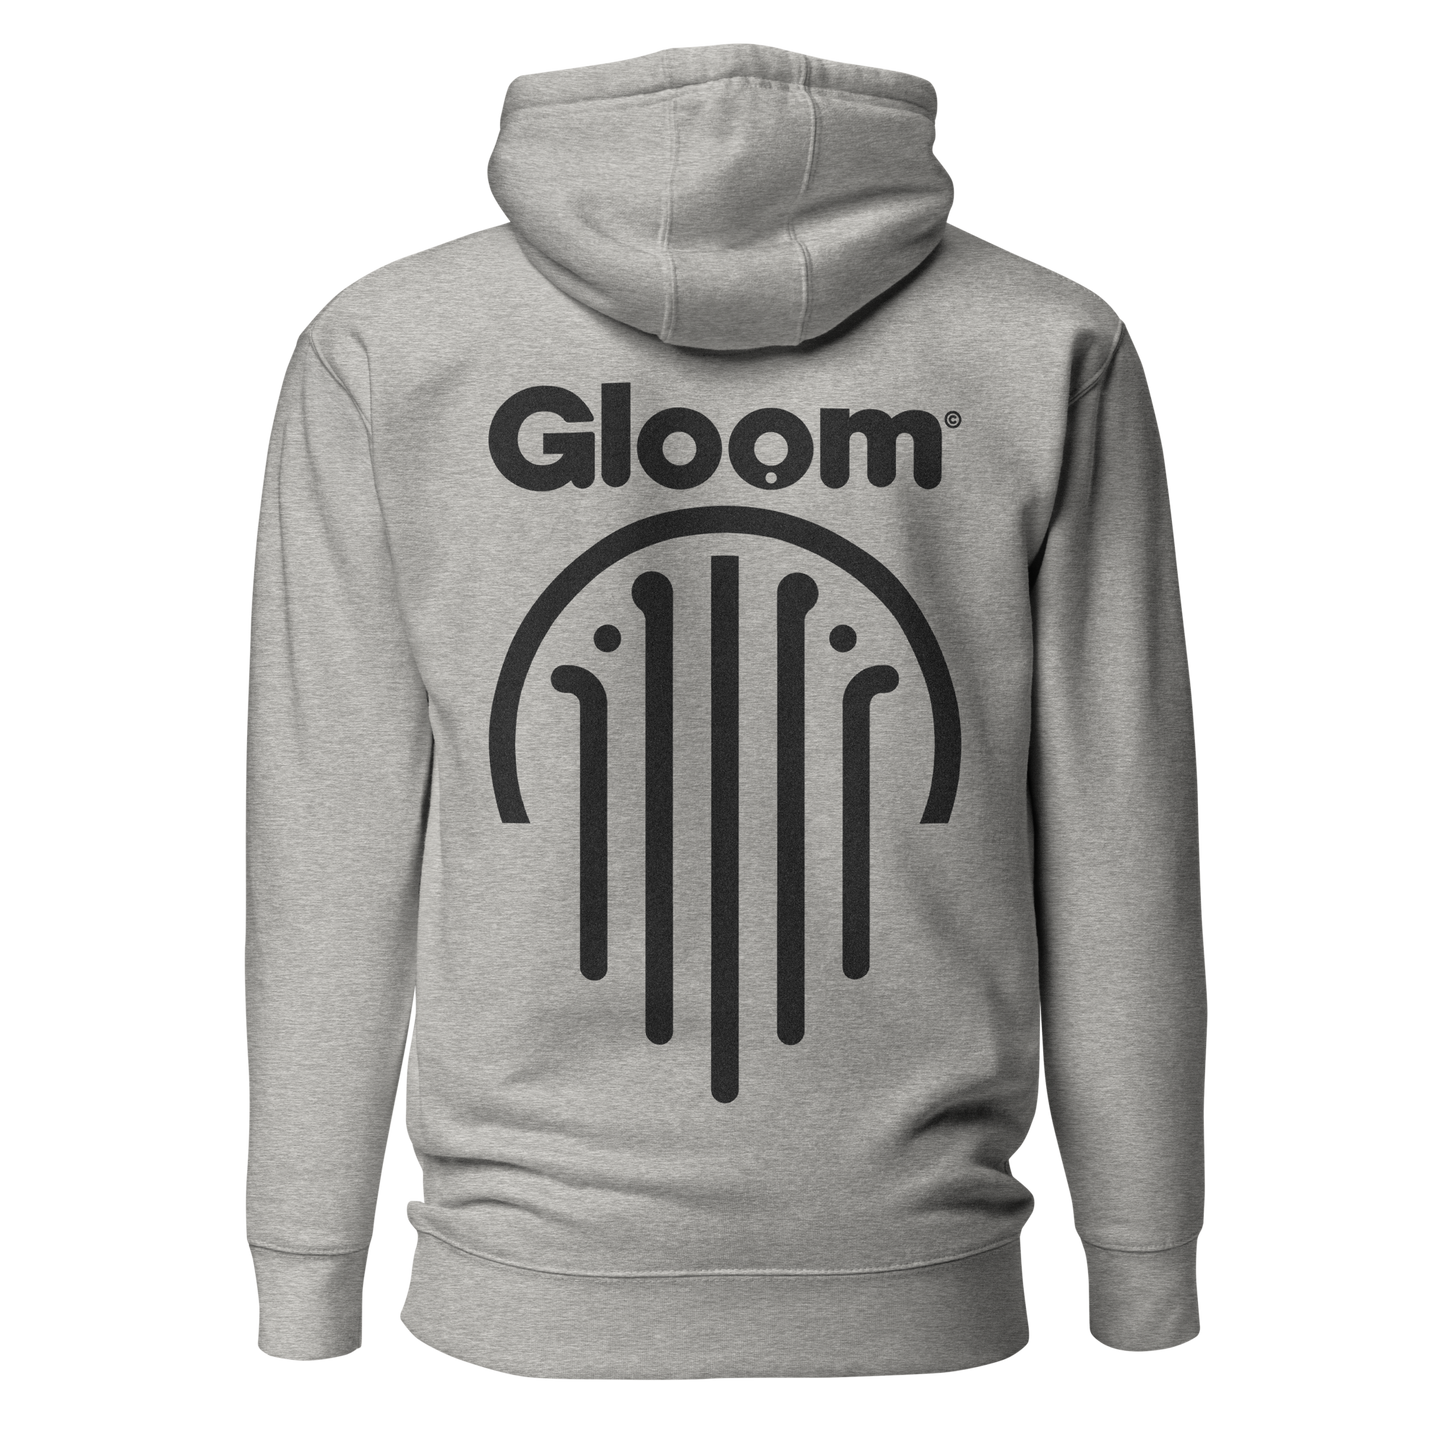 Gloom Legacy Backprint Hoodie